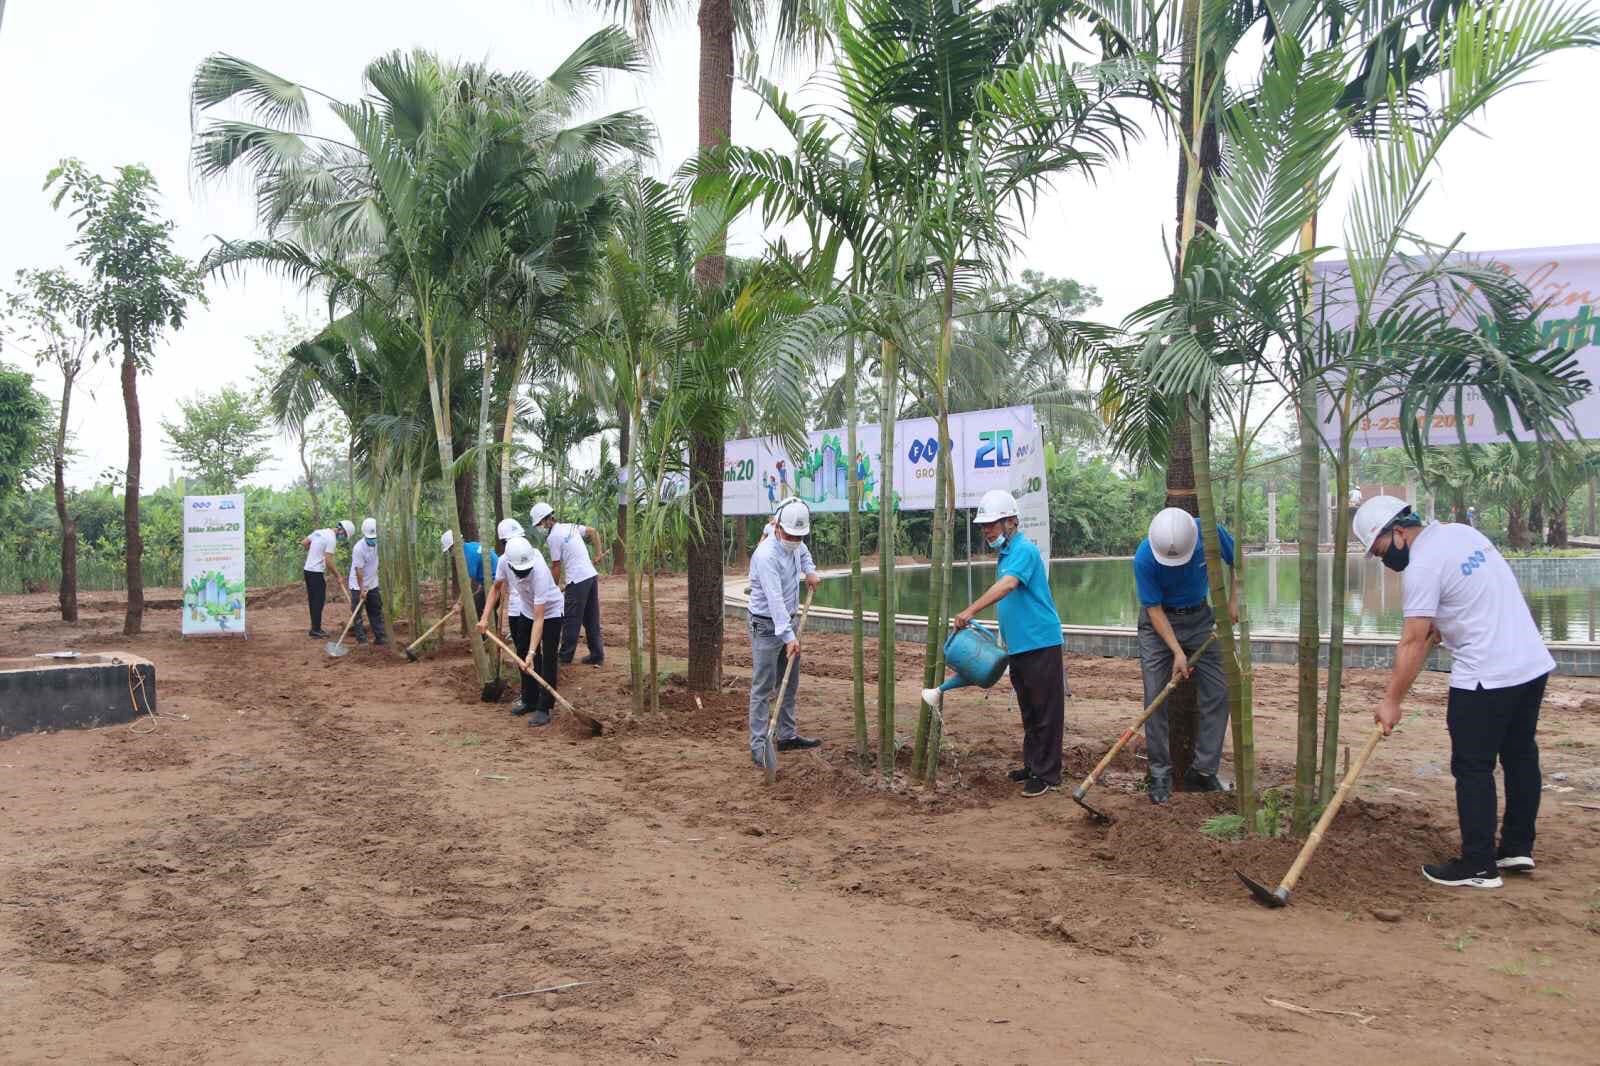 Cán bộ nhân viên tại FLC Vĩnh Phúc hăng hái góp sức mang đến thêm nhiều “mảng xanh” cho khu nghỉ dưỡng